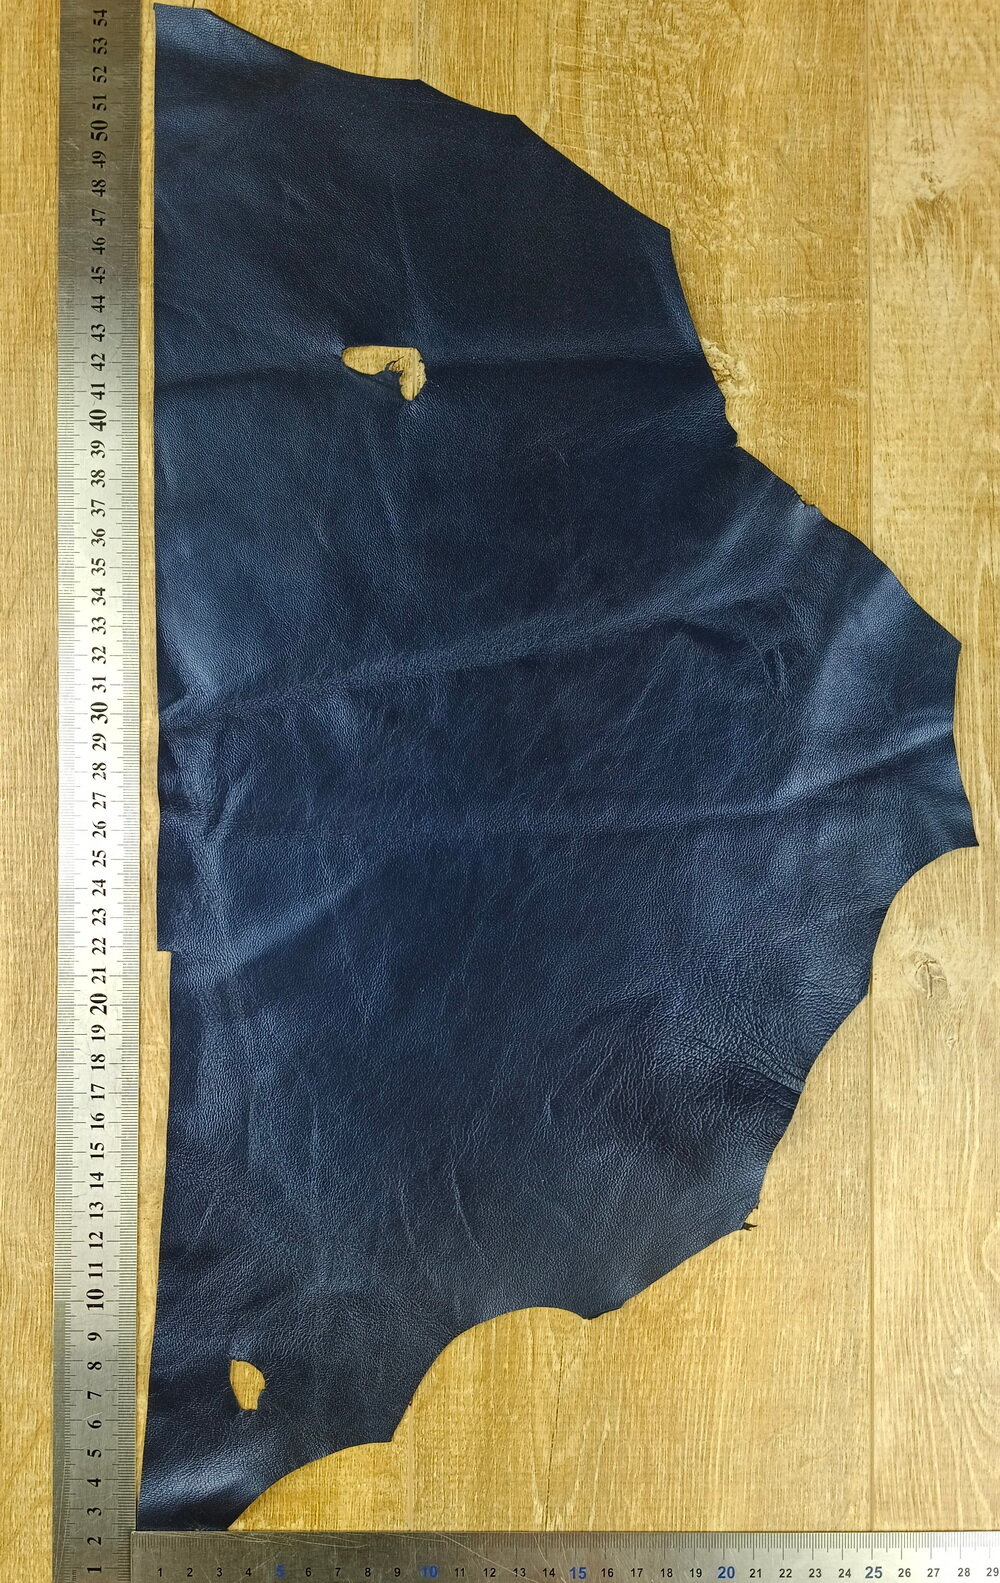 Лоскут натуральной кожи для рукоделия, ремонта одежды и декора, темно-синего цвета (0.5-0.7 мм, овчина)